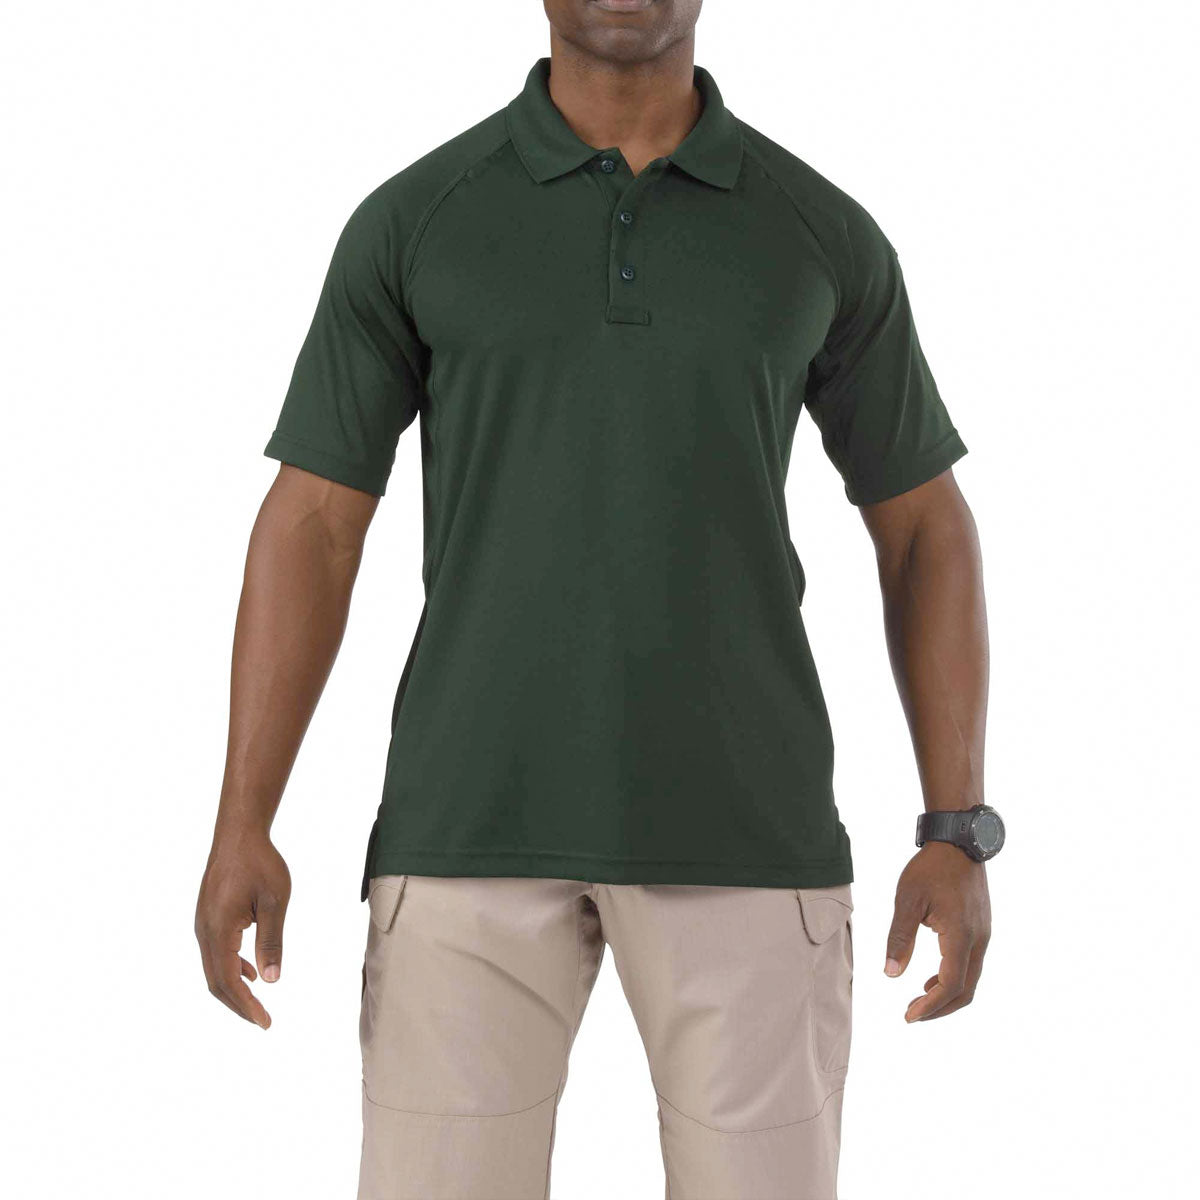 5.11 Tactical Performance Short Sleeve Polo Shirts L.E. Green Tactical Distributors Ltd New Zealand